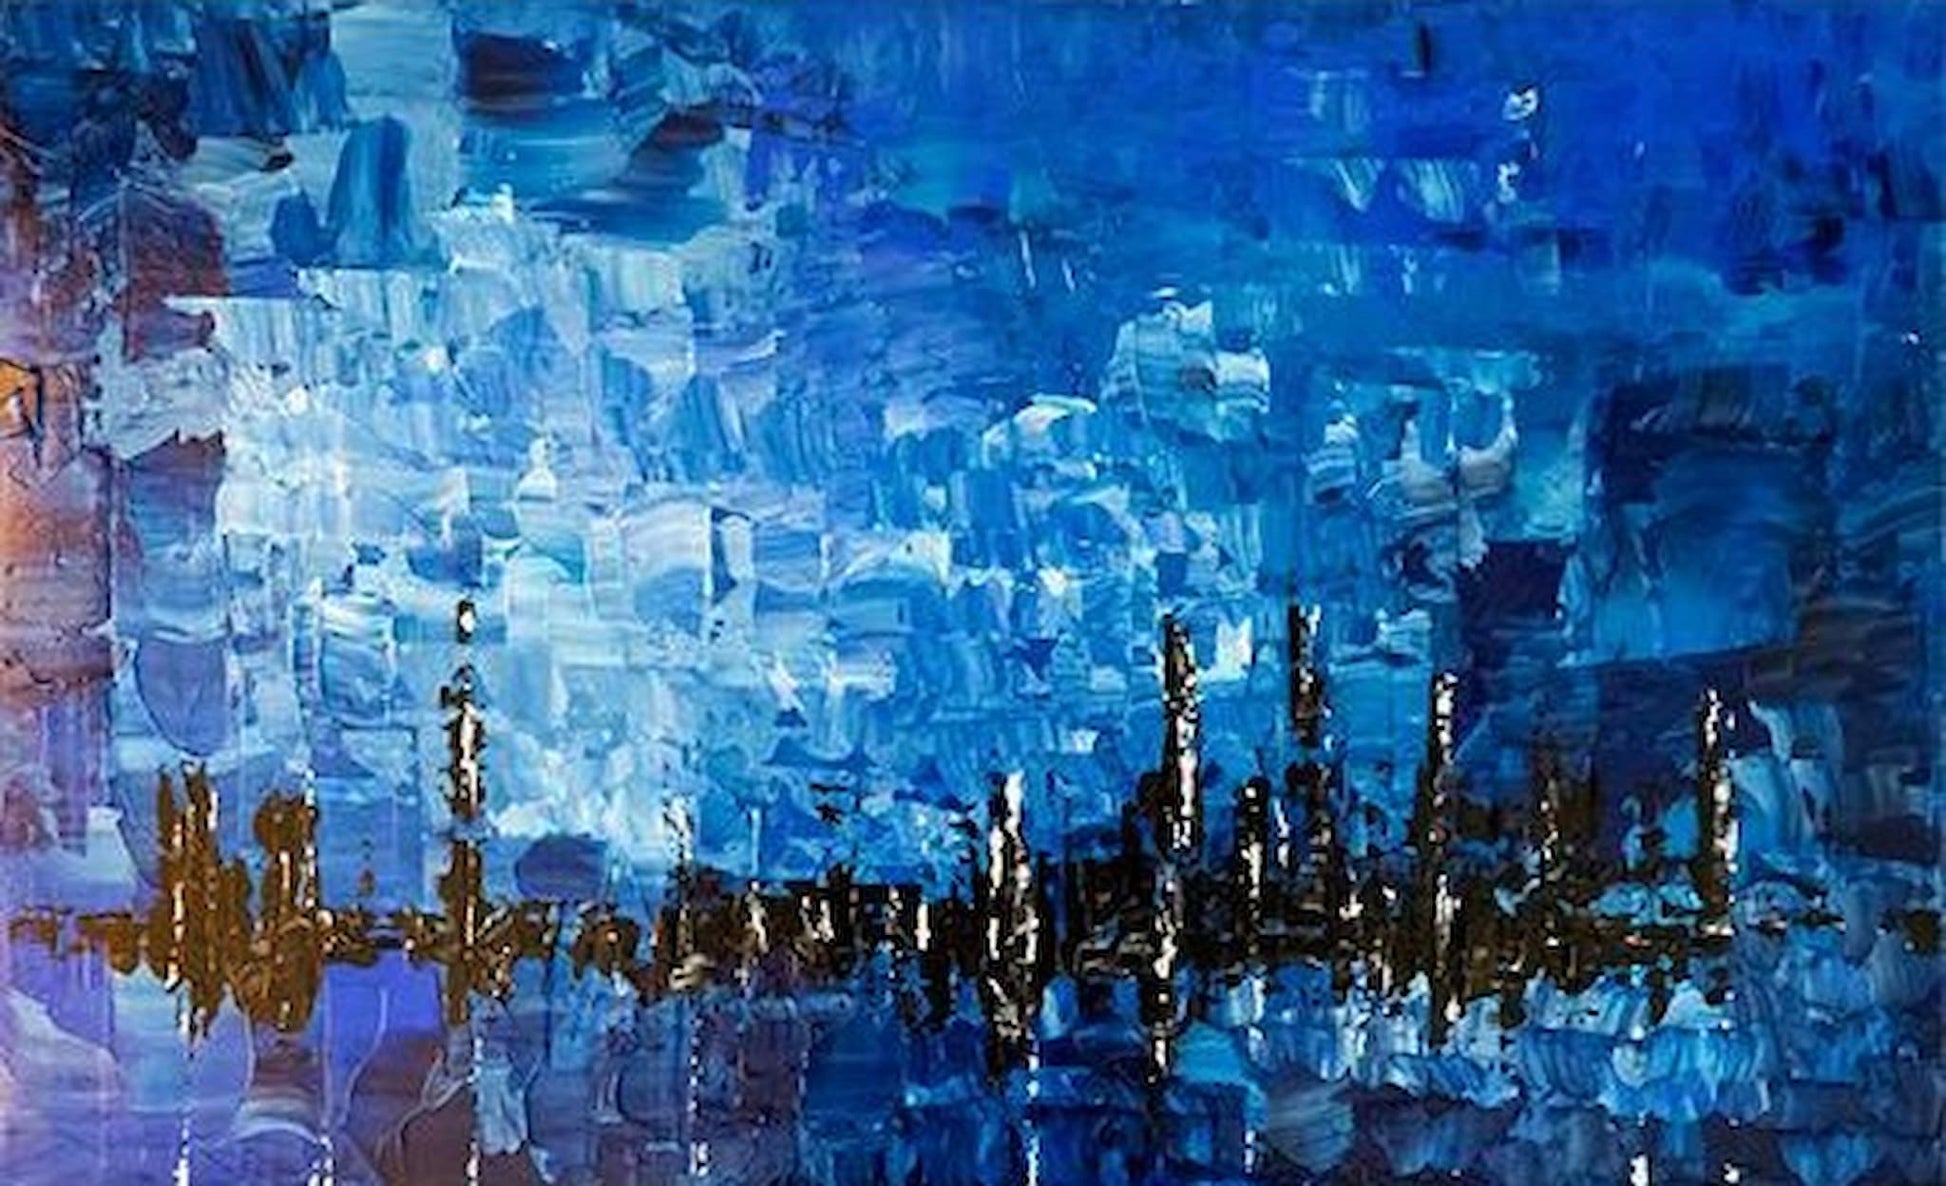 Blue Skyline - Smolensky Gallery